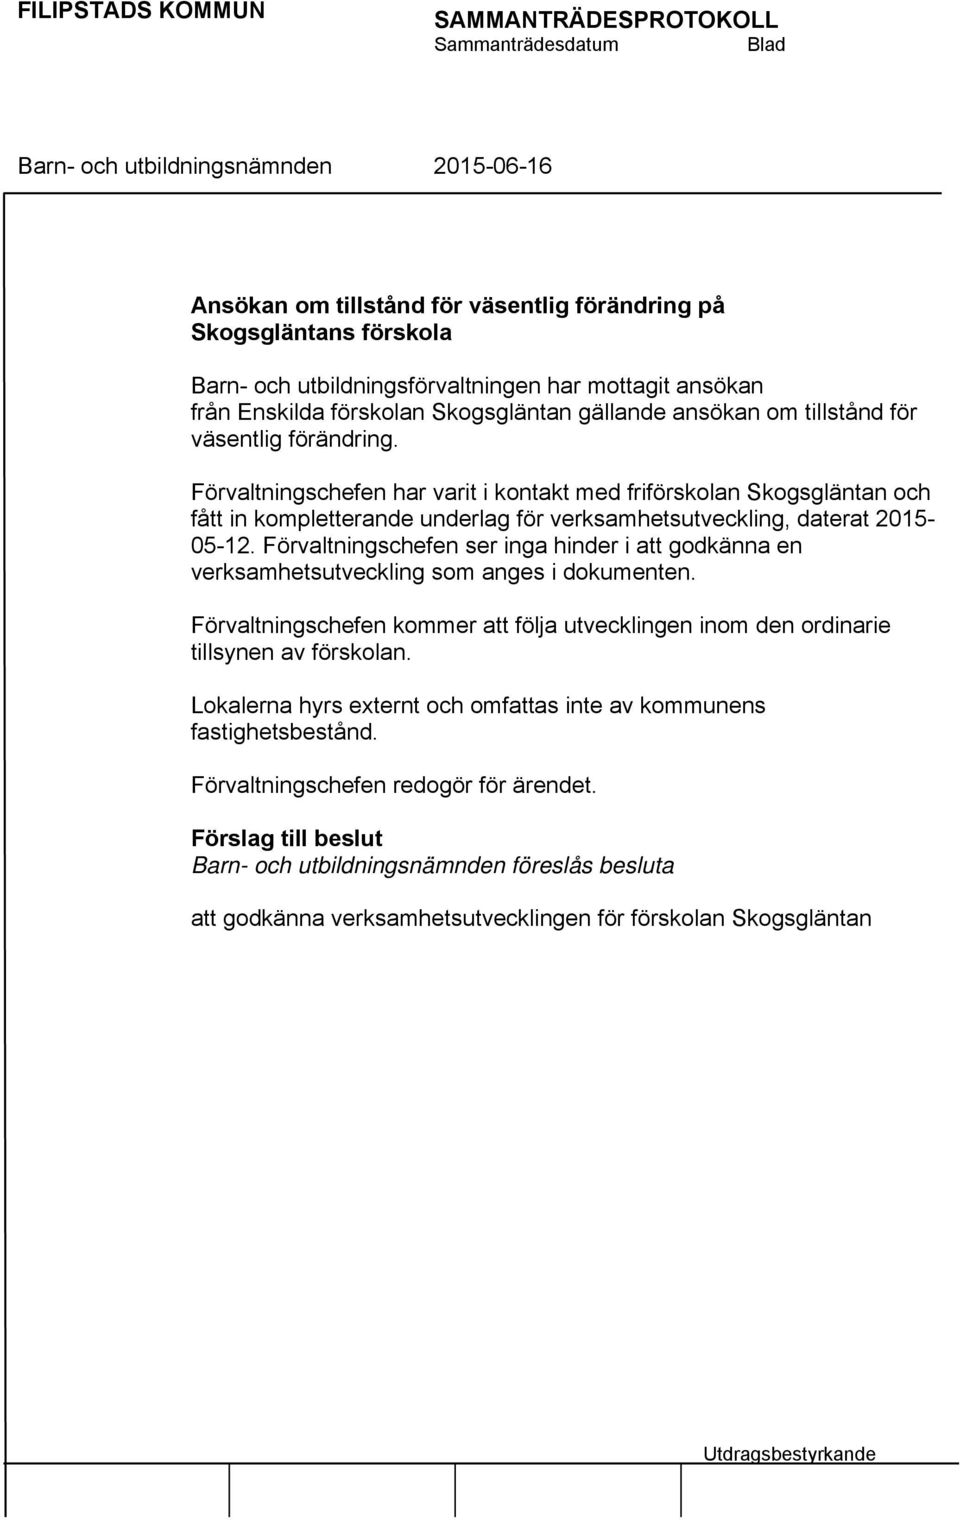 Förvaltningschefen har varit i kontakt med friförskolan Skogsgläntan och fått in kompletterande underlag för verksamhetsutveckling, daterat 2015-05-12.